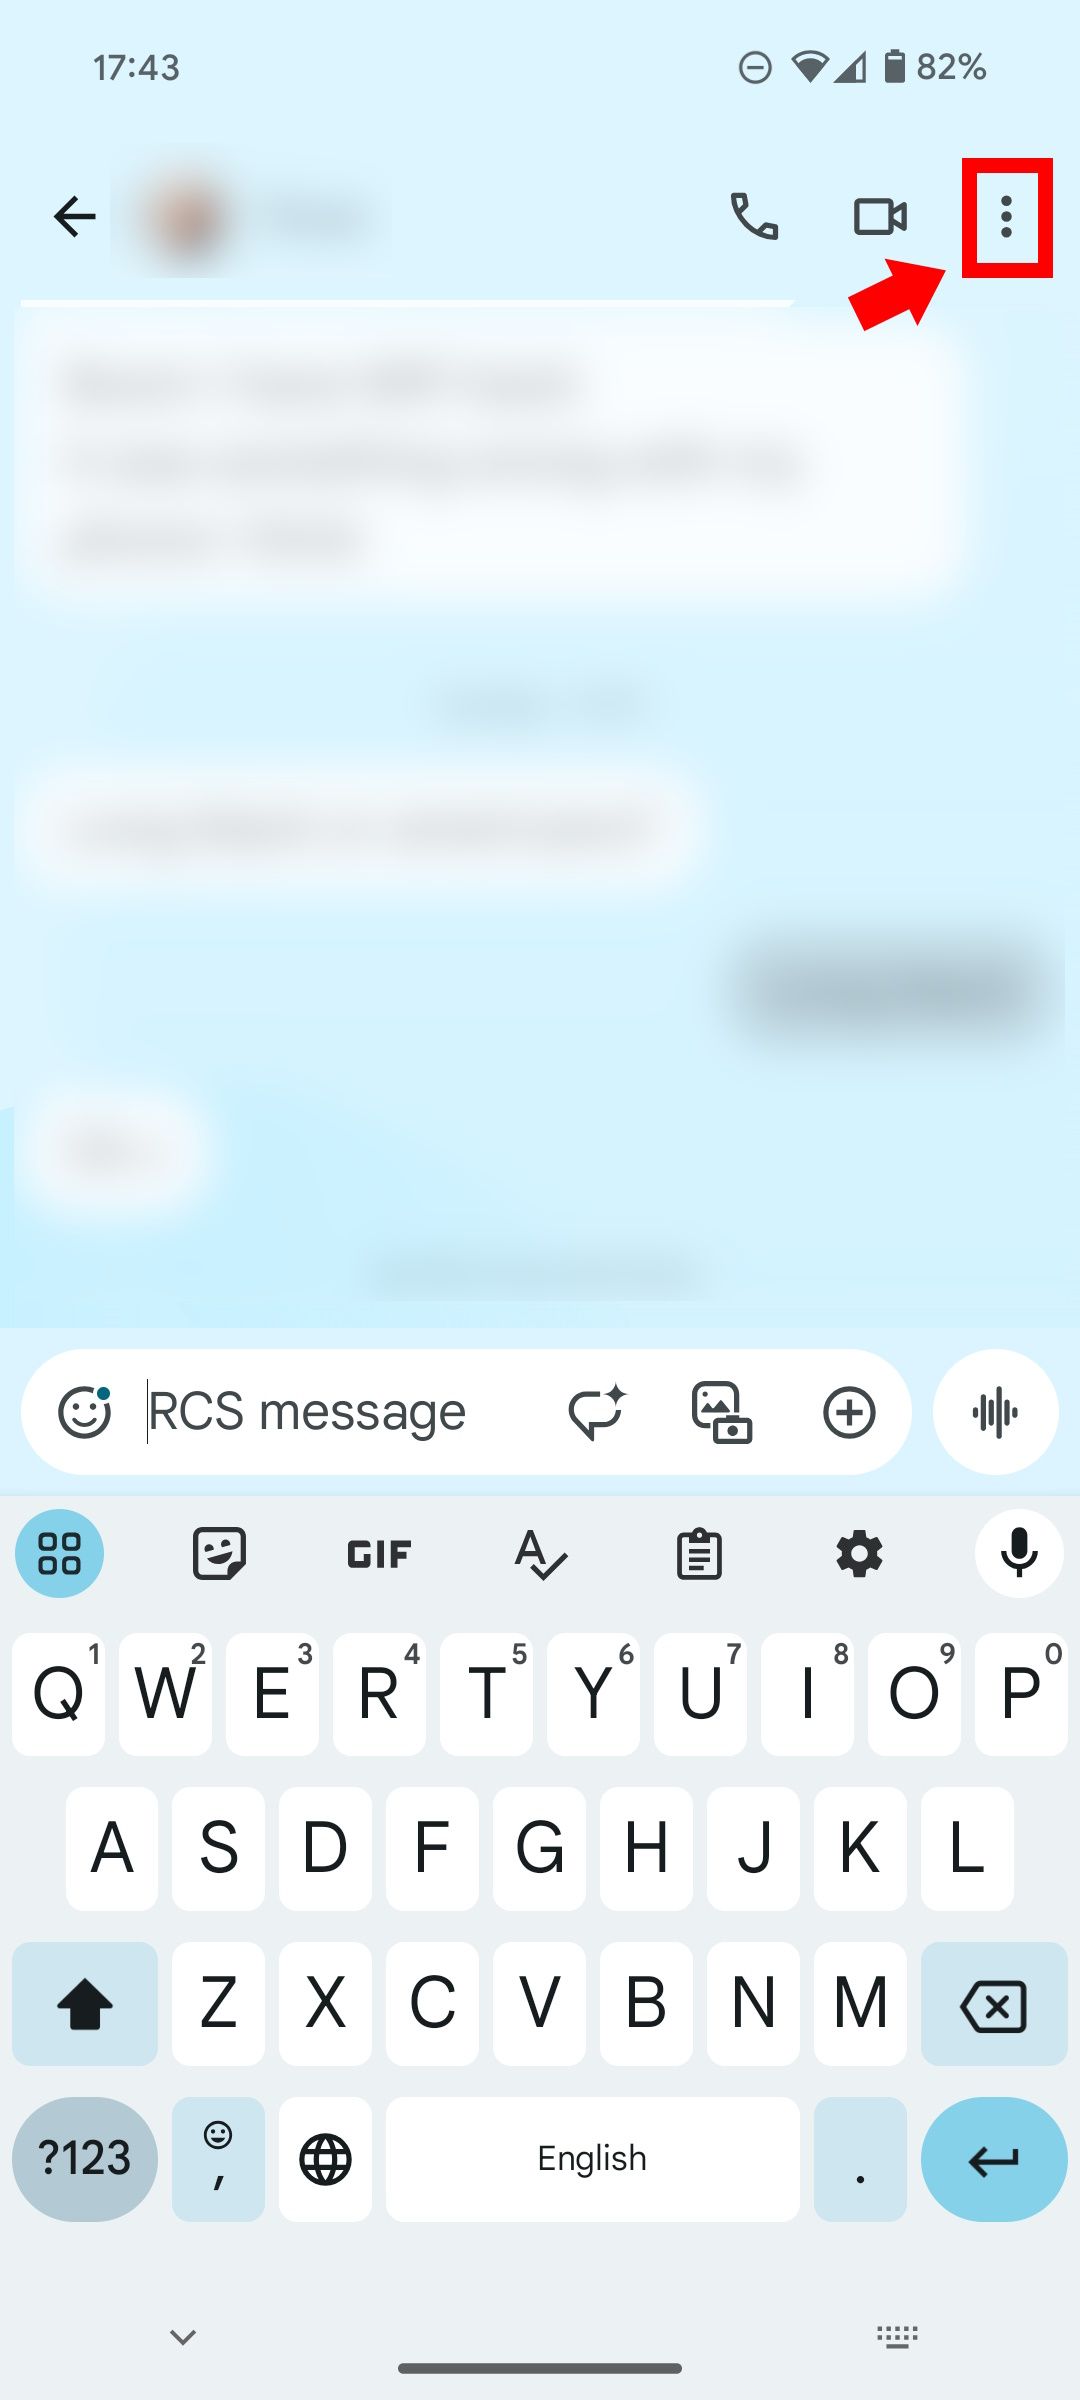 Panah merah solid menunjuk ke garis persegi panjang kecil berwarna merah di atas ikon tiga titik di sebelah kamera di Google Message pada ponsel Android